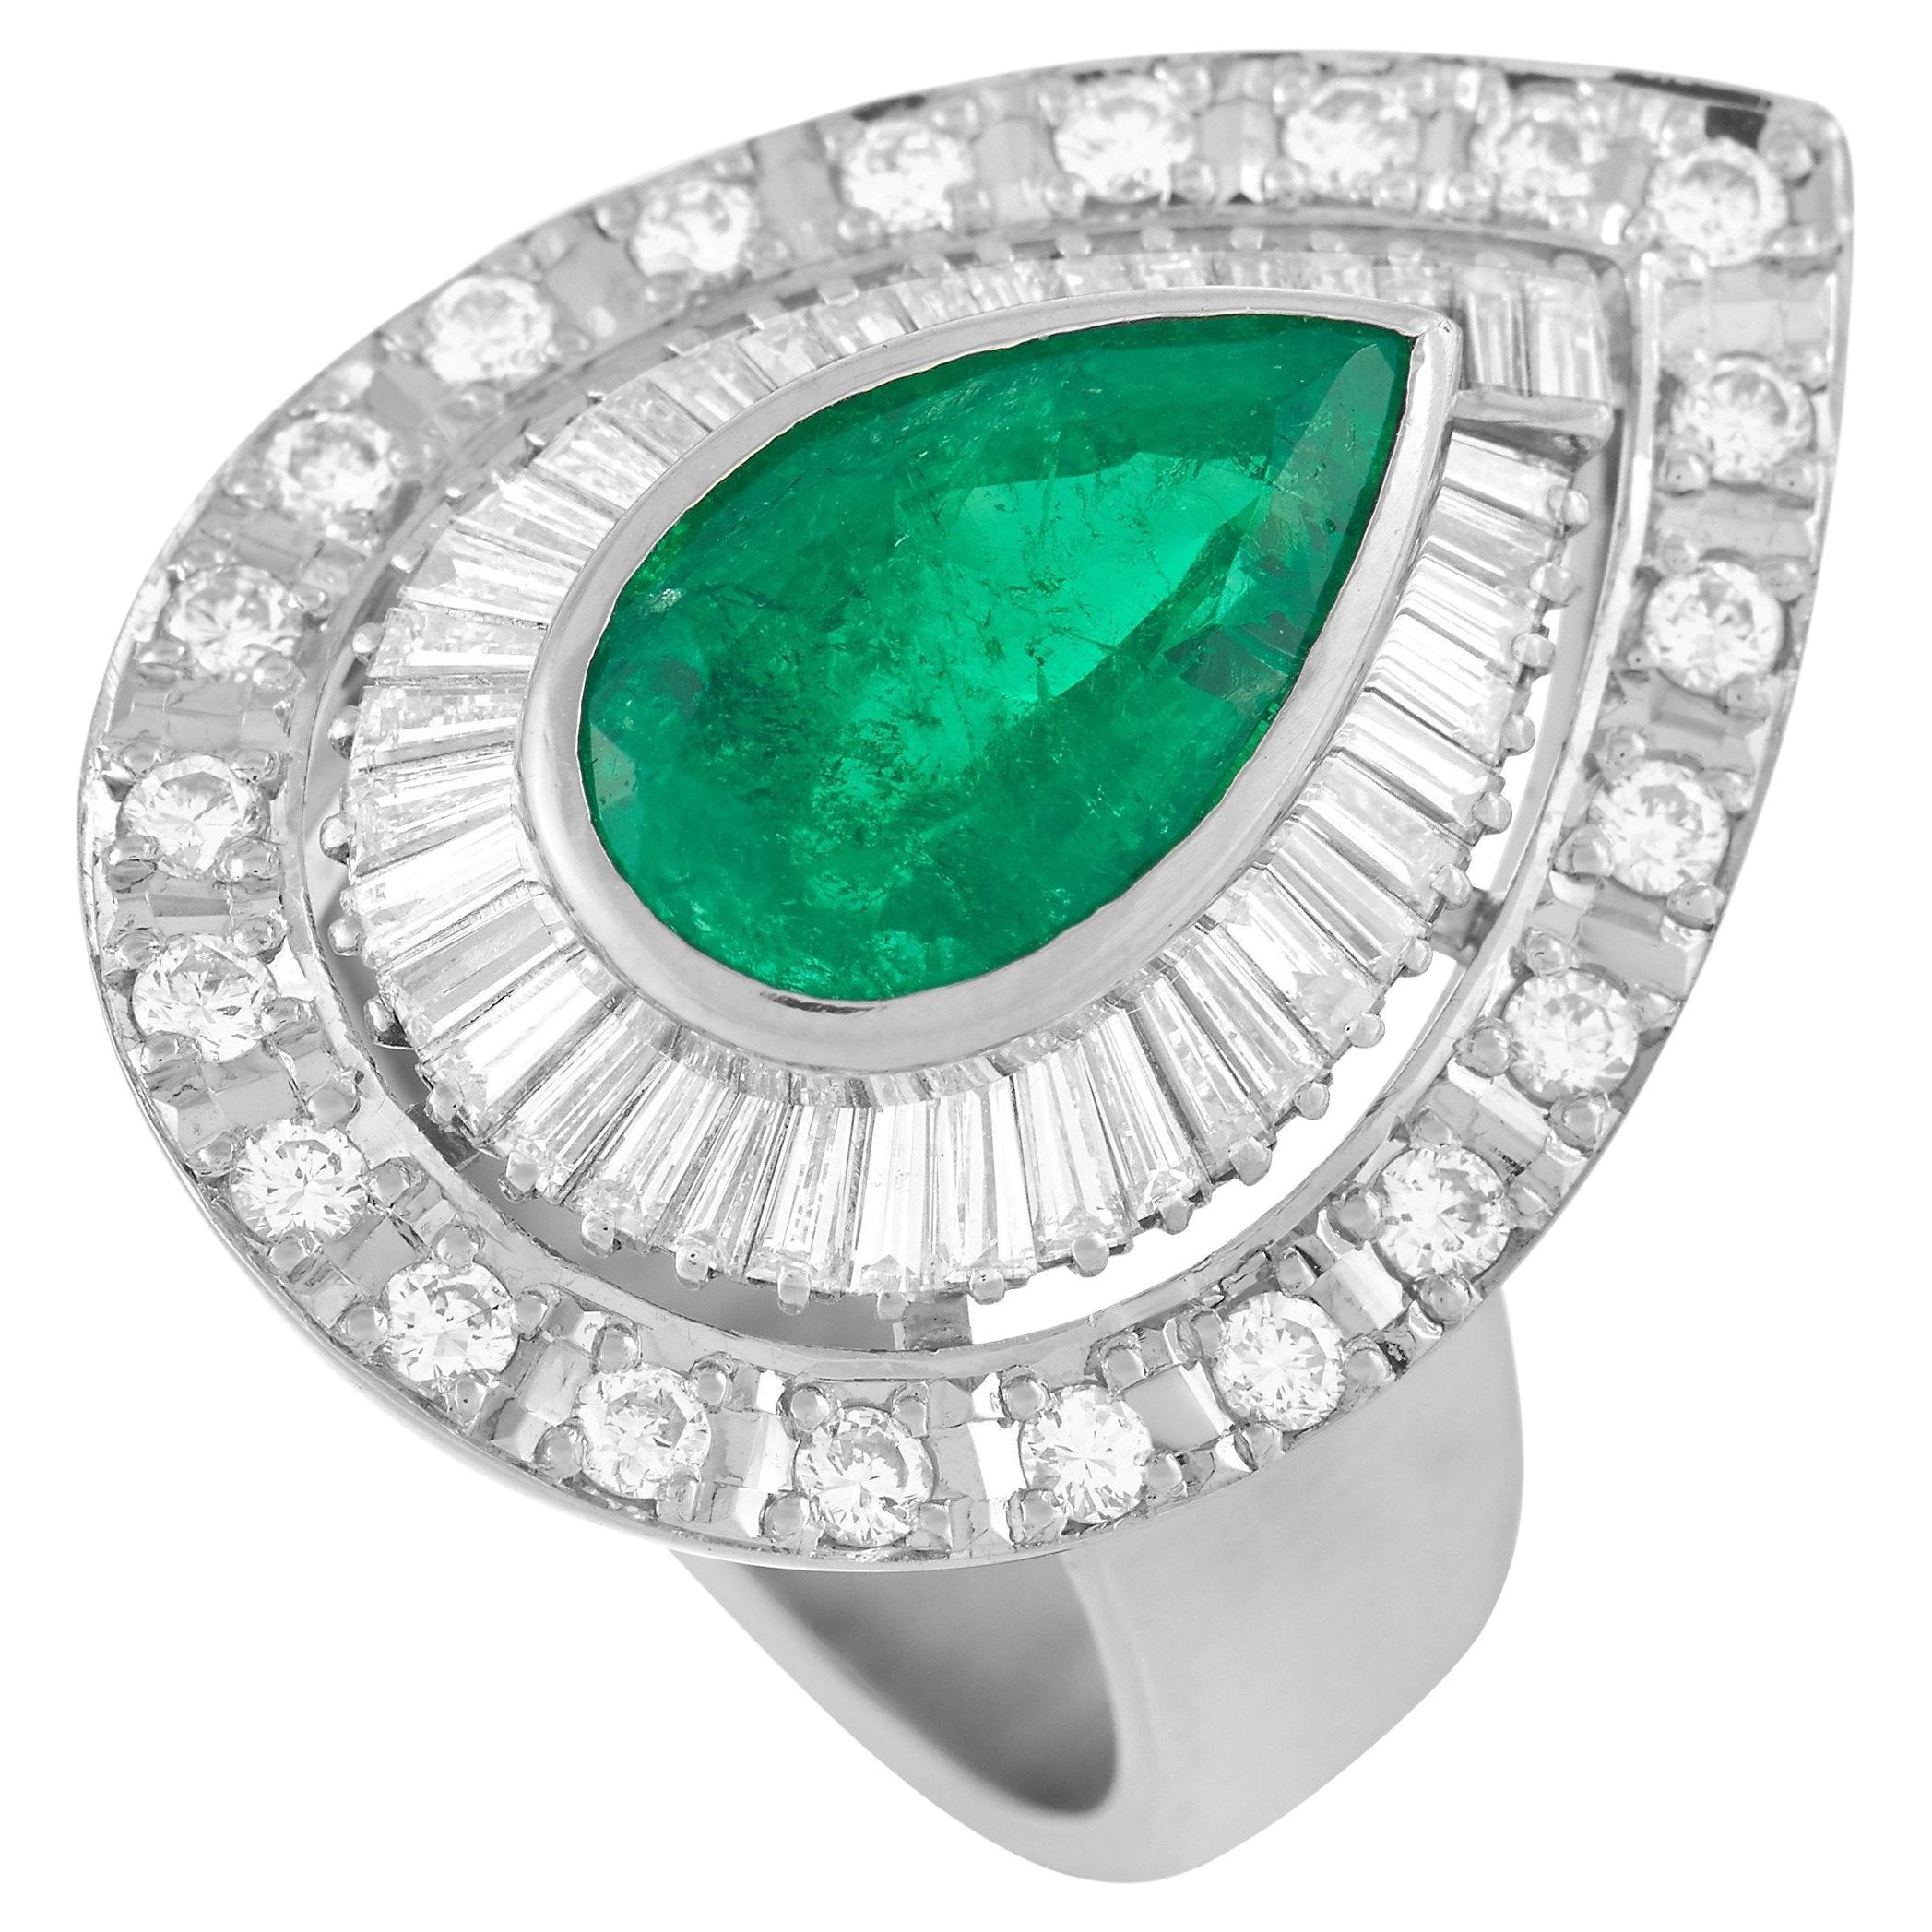 LB Exclusive Platinum 0.95 Ct Diamond and Emerald Ring